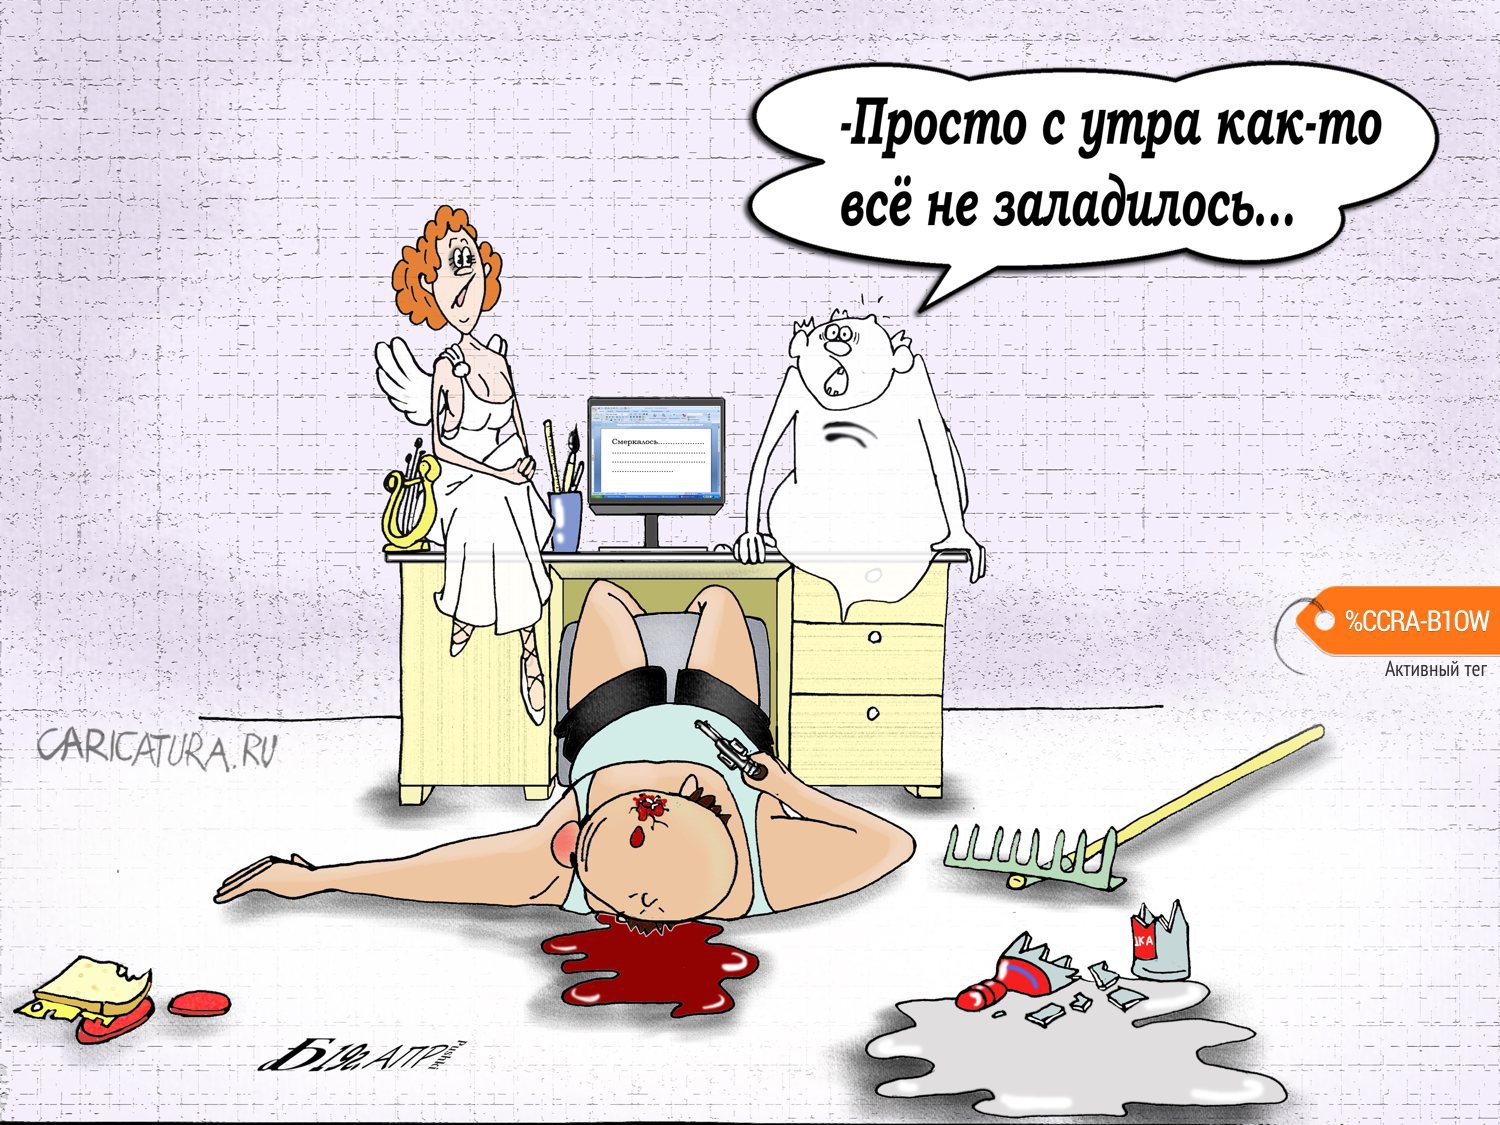 Карикатура "Про музу", Борис Демин